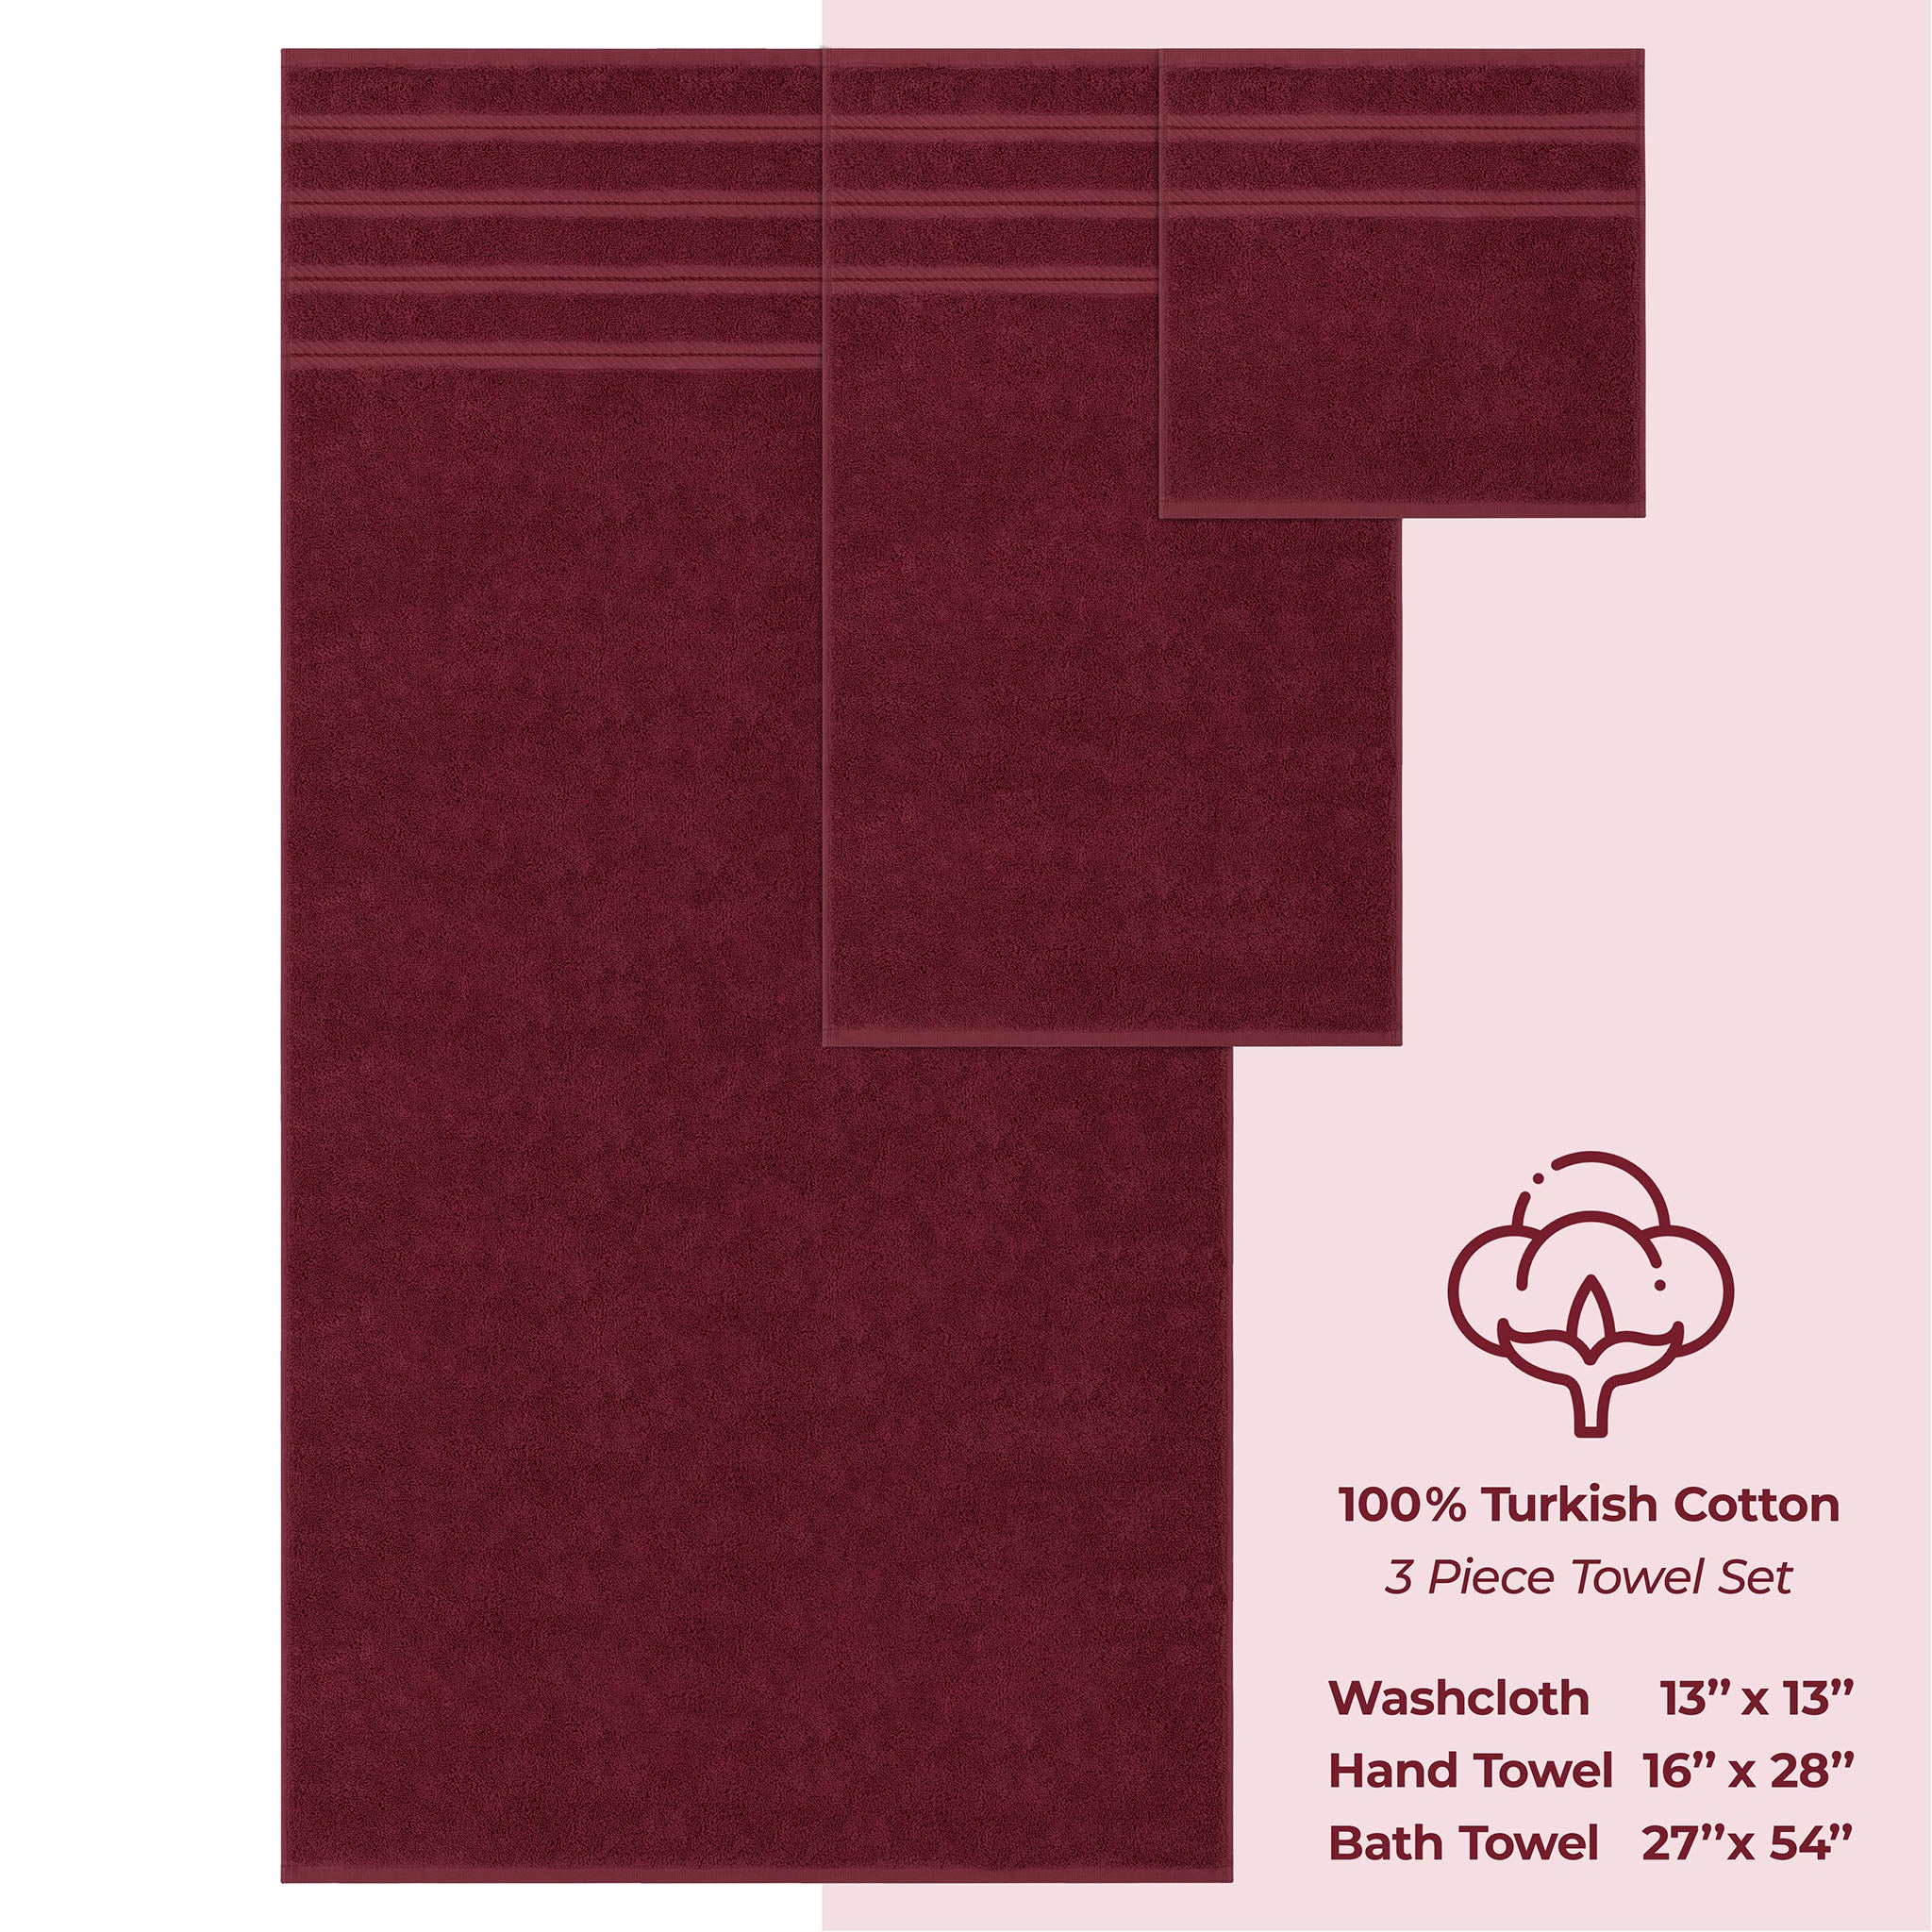 American Soft Linen 3 Piece Luxury Hotel Towel Set 20 set case pack bordeaux-red-4